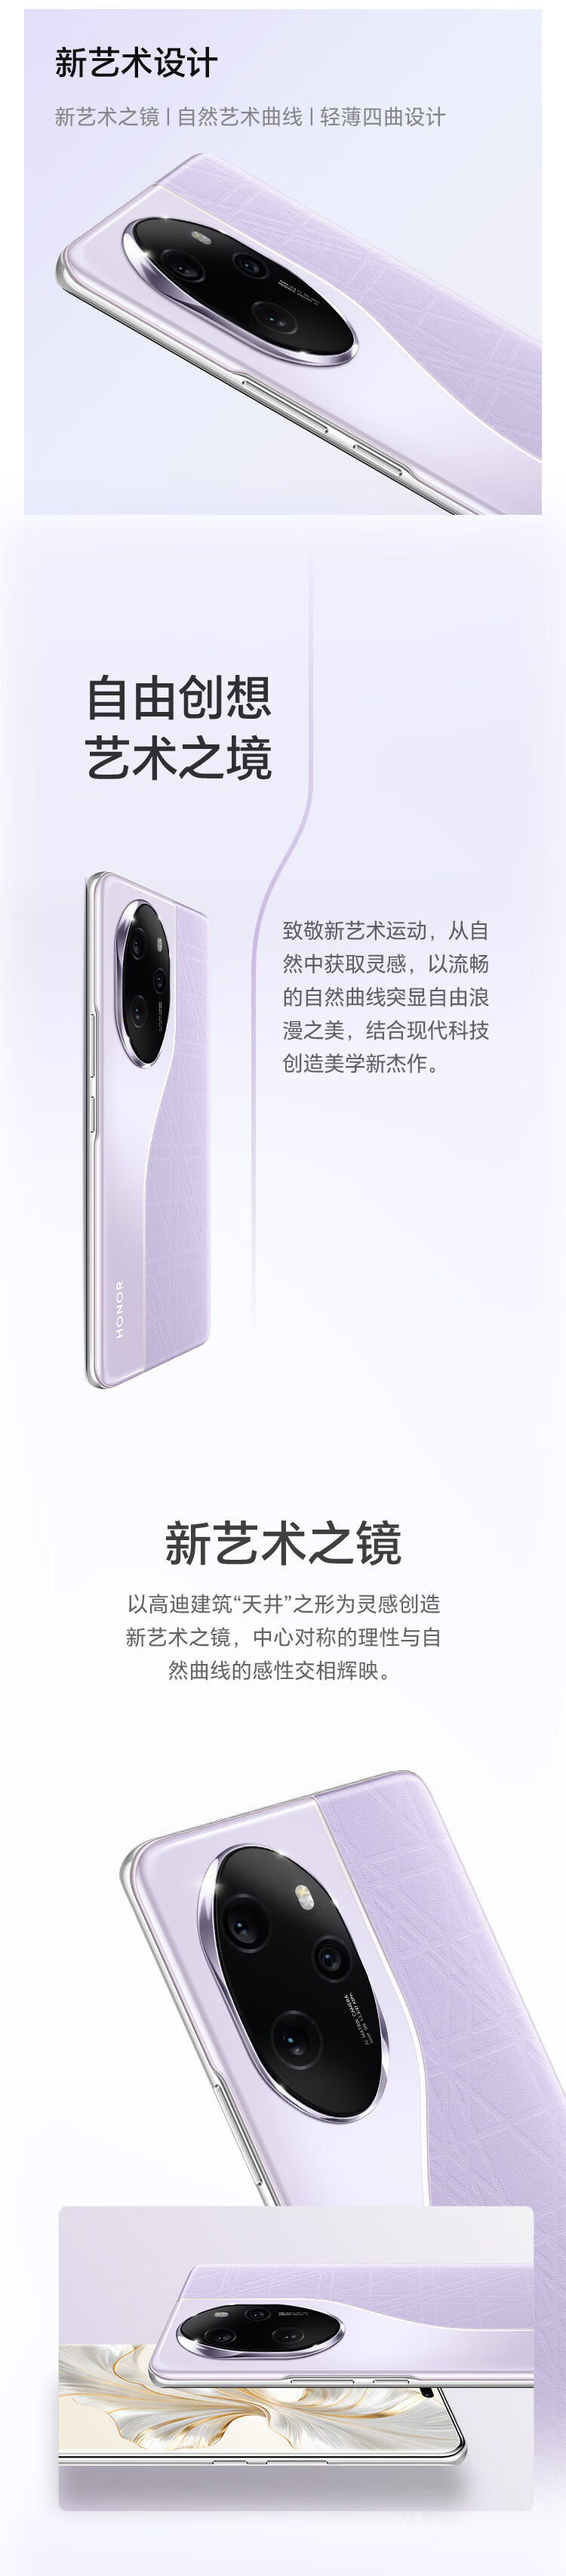 荣耀 100 Pro单反级写真相机 第二代骁龙8旗舰芯片 5G手机